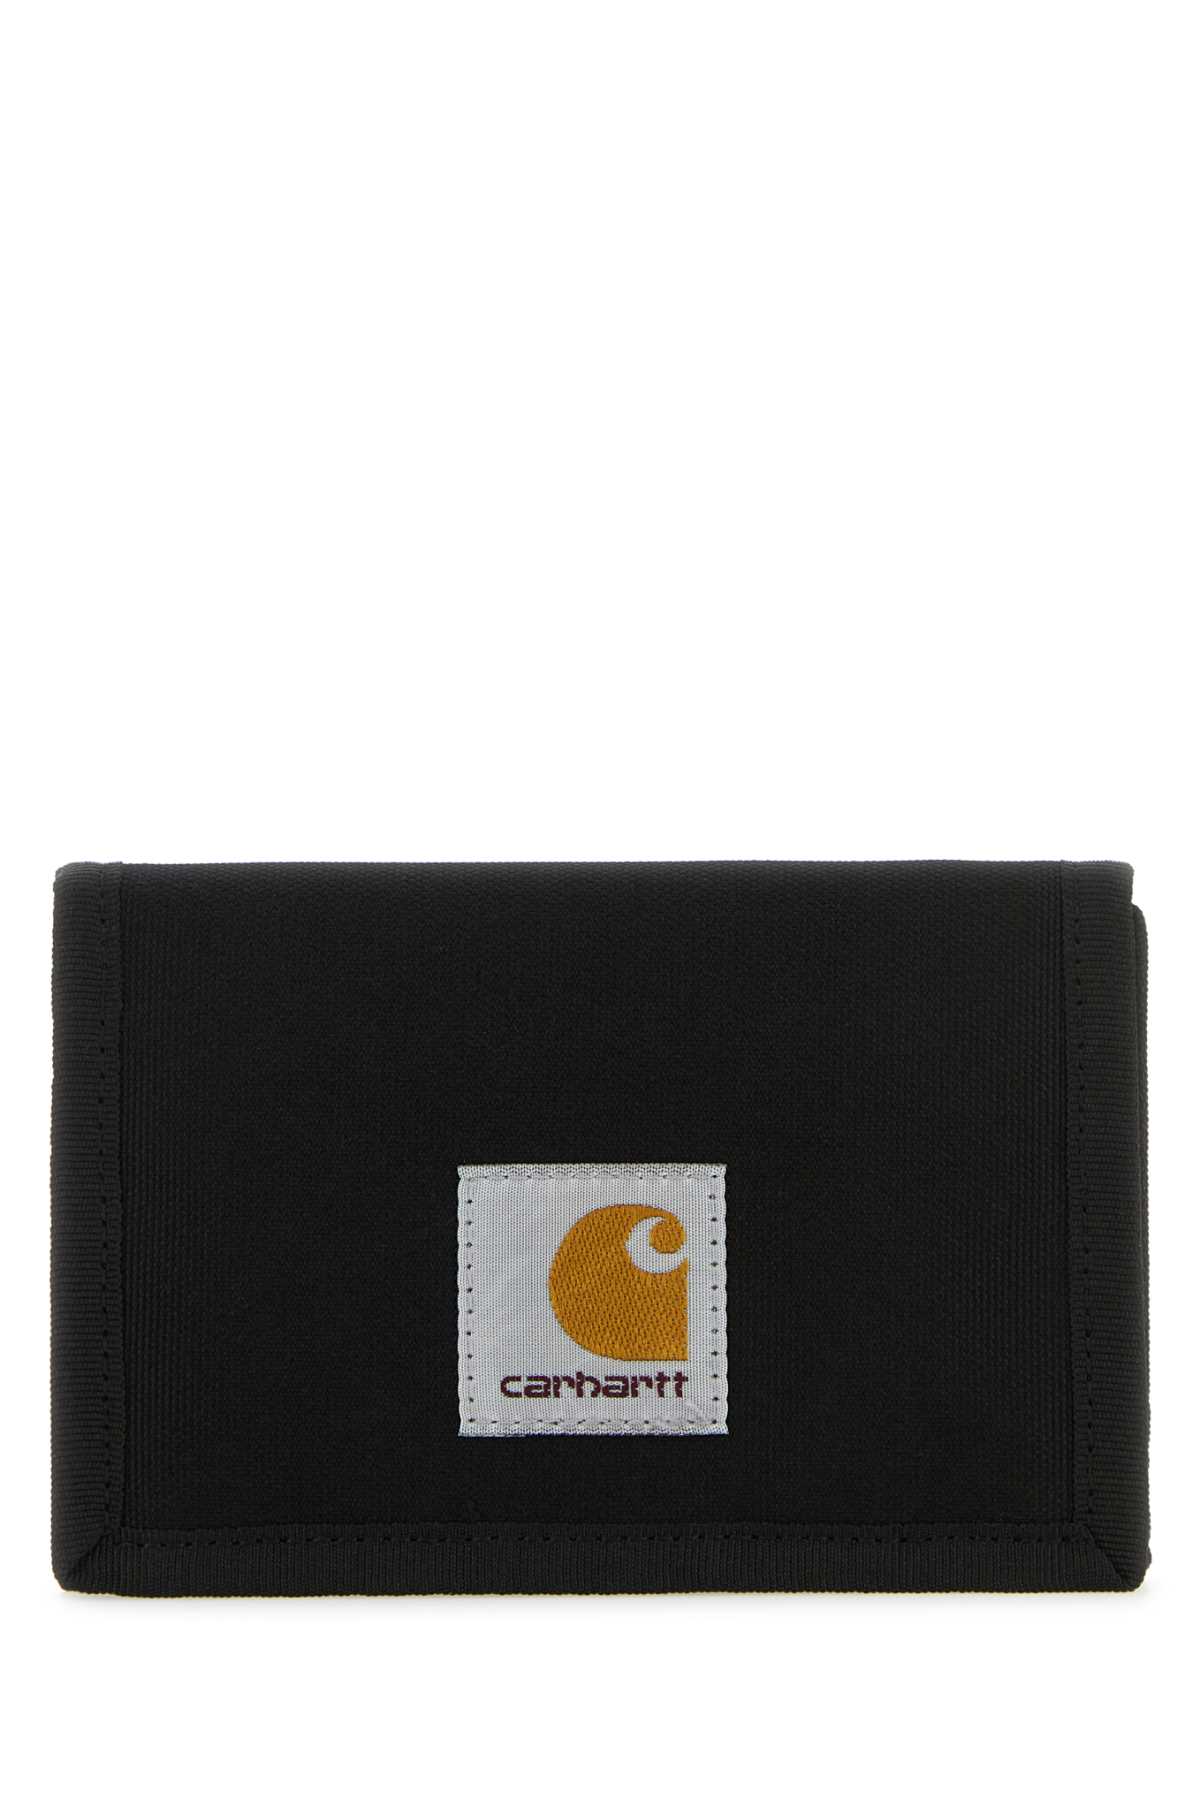 Shop Carhartt Black Fabric Alec Wallet